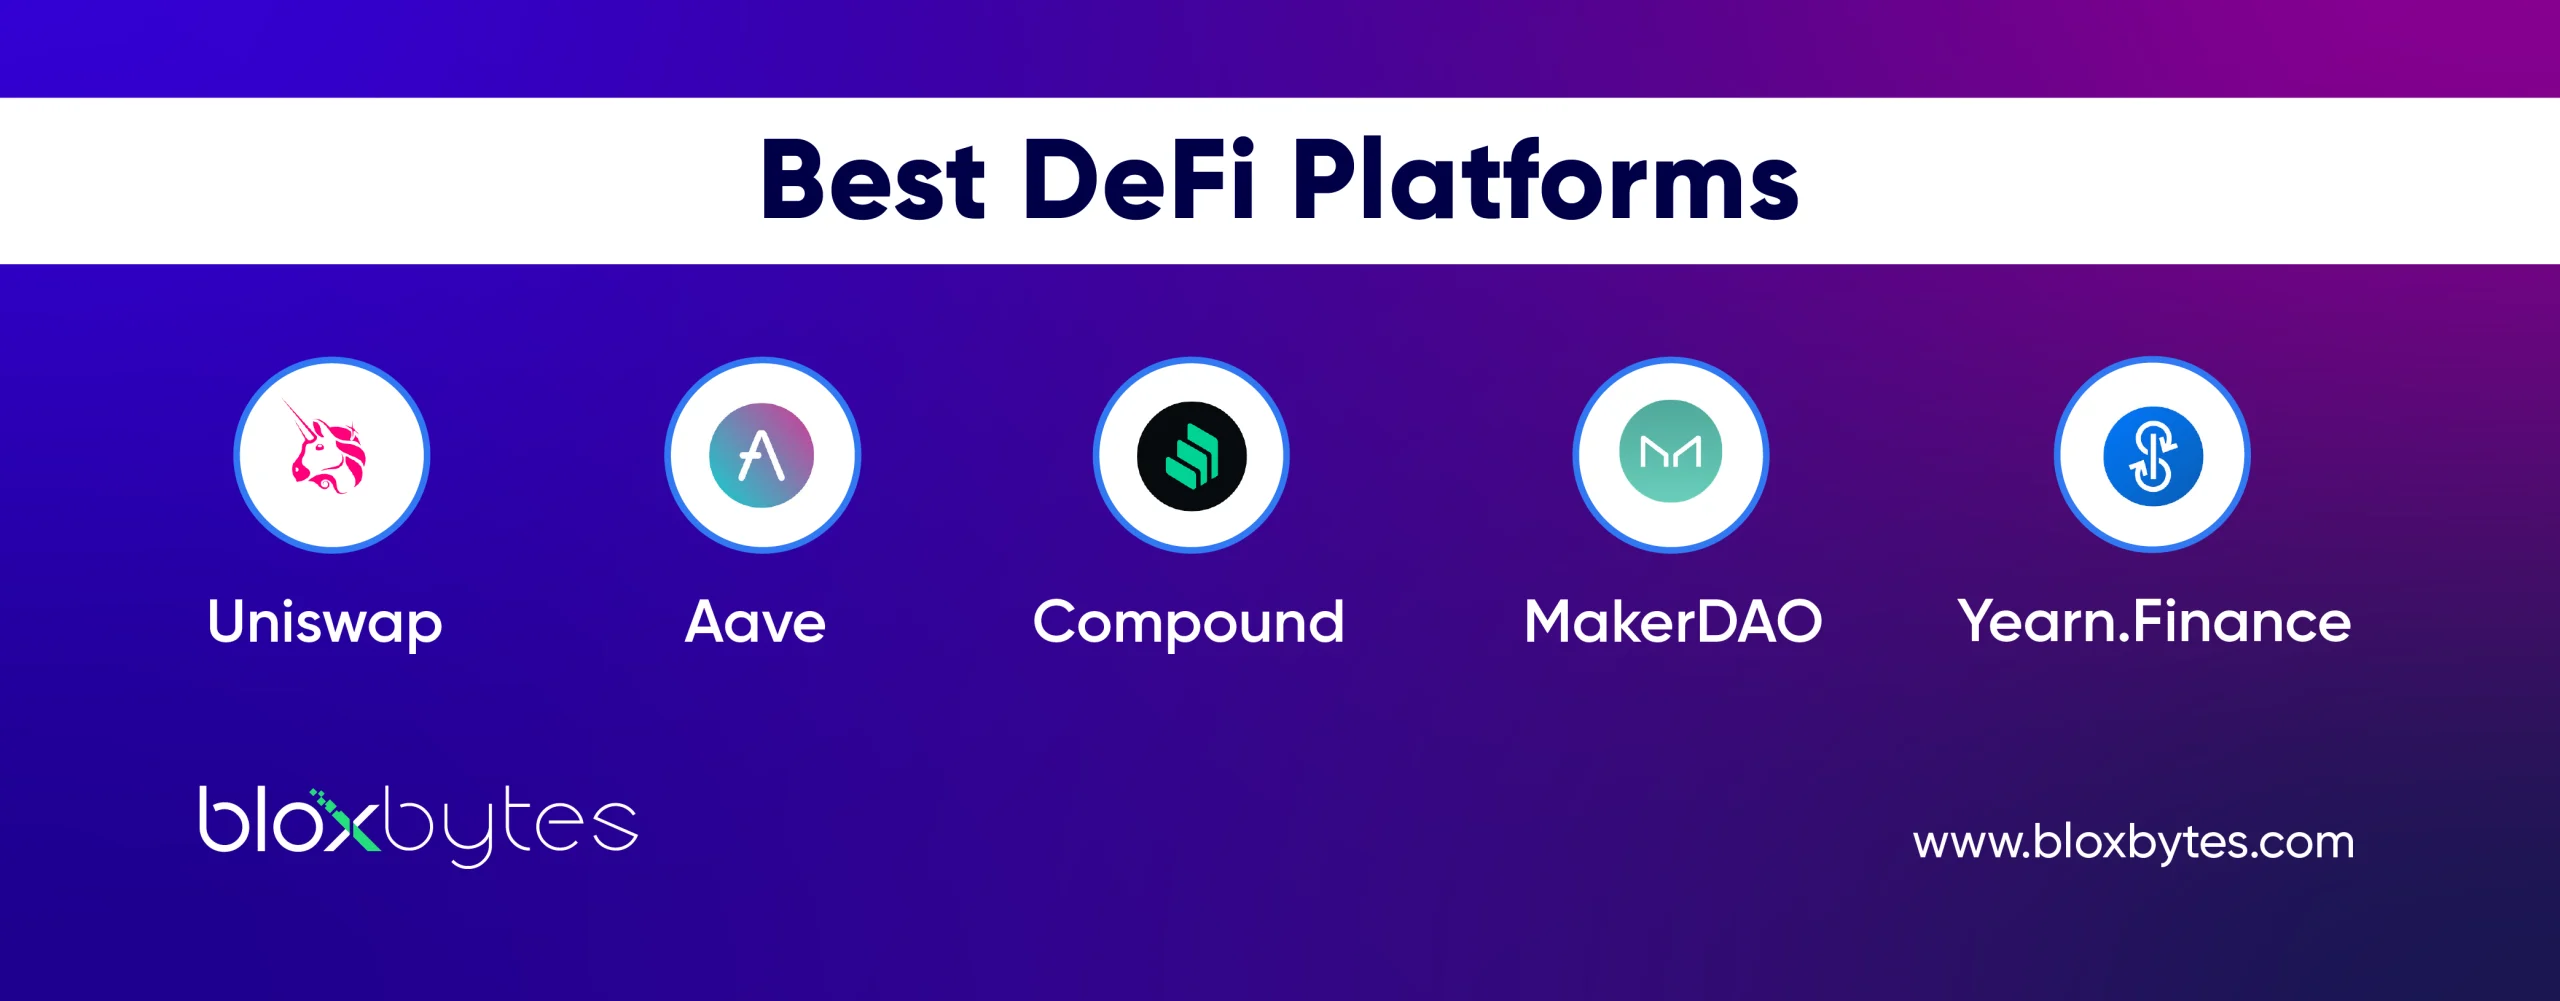 Best DeFi Platforms 